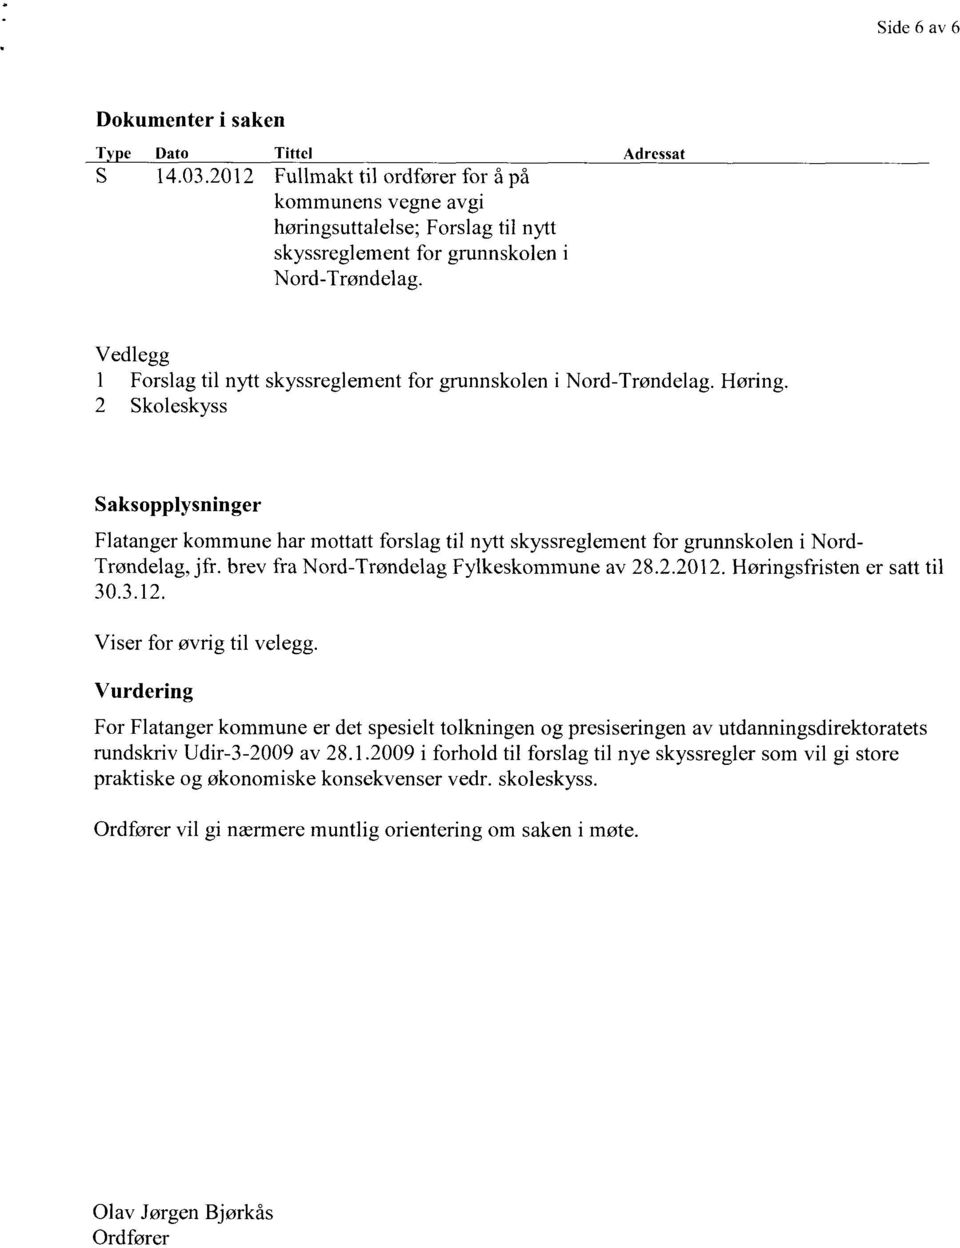 2 Skoleskyss Saksopplysninger Flatanger kommune har mottatt forslag til nytt skyssreglement for grunnskolen i Nord- Trøndelag, jfr. brev fra Nord-Trøndelag Fylkeskommune av 28.2.2012.